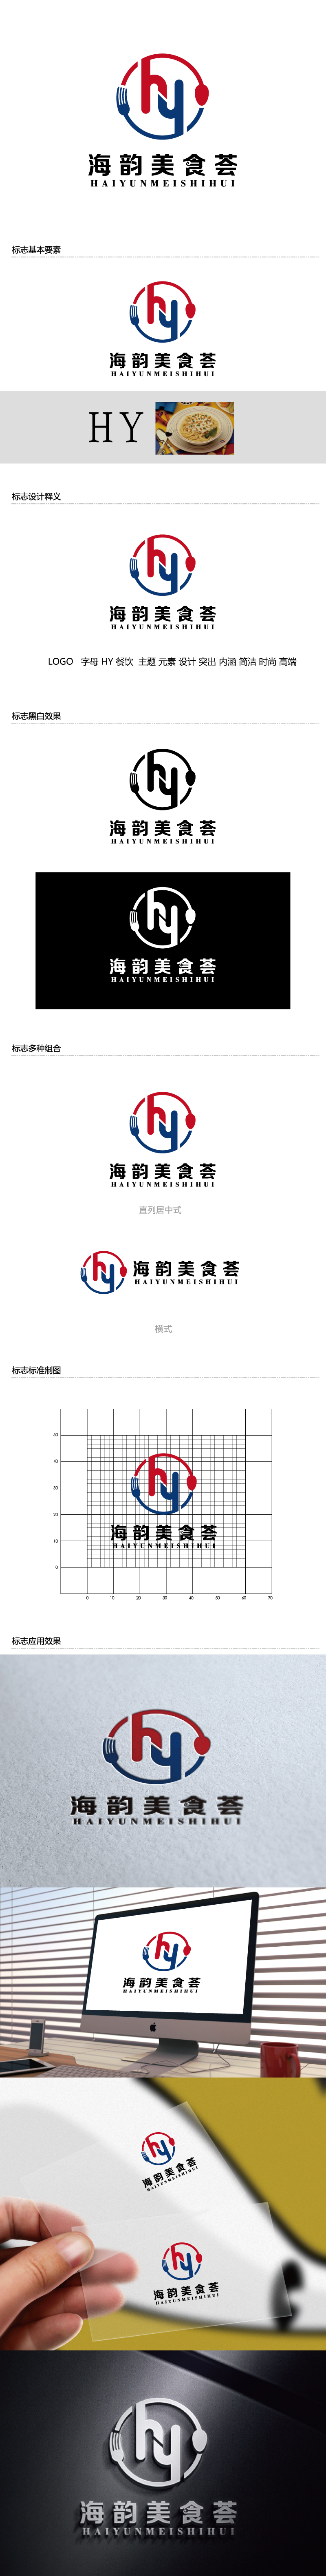 张俊的海韵美食荟logo设计